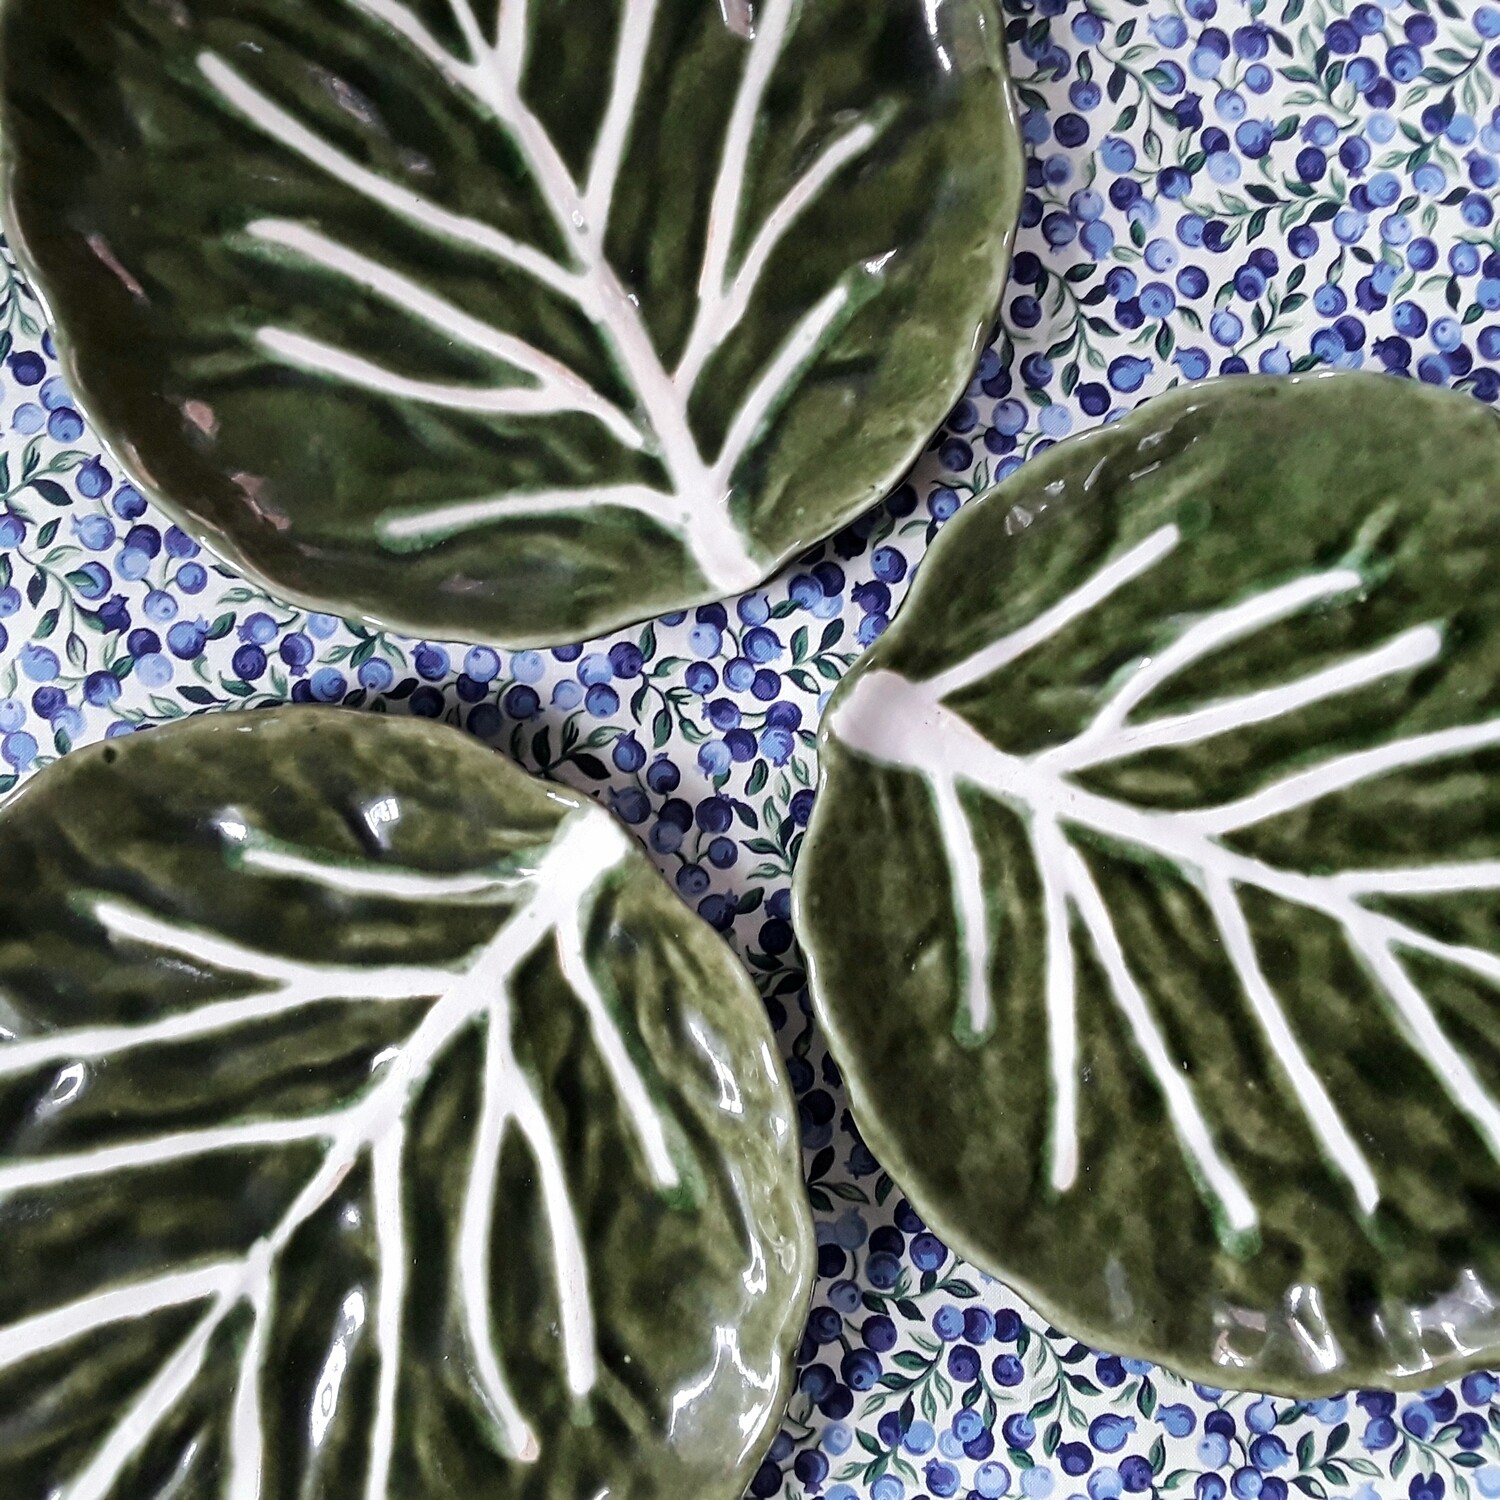 Set of 3 Vintage Ceramic Cabbage or Lettuce Leaf Plates Made in Portugal